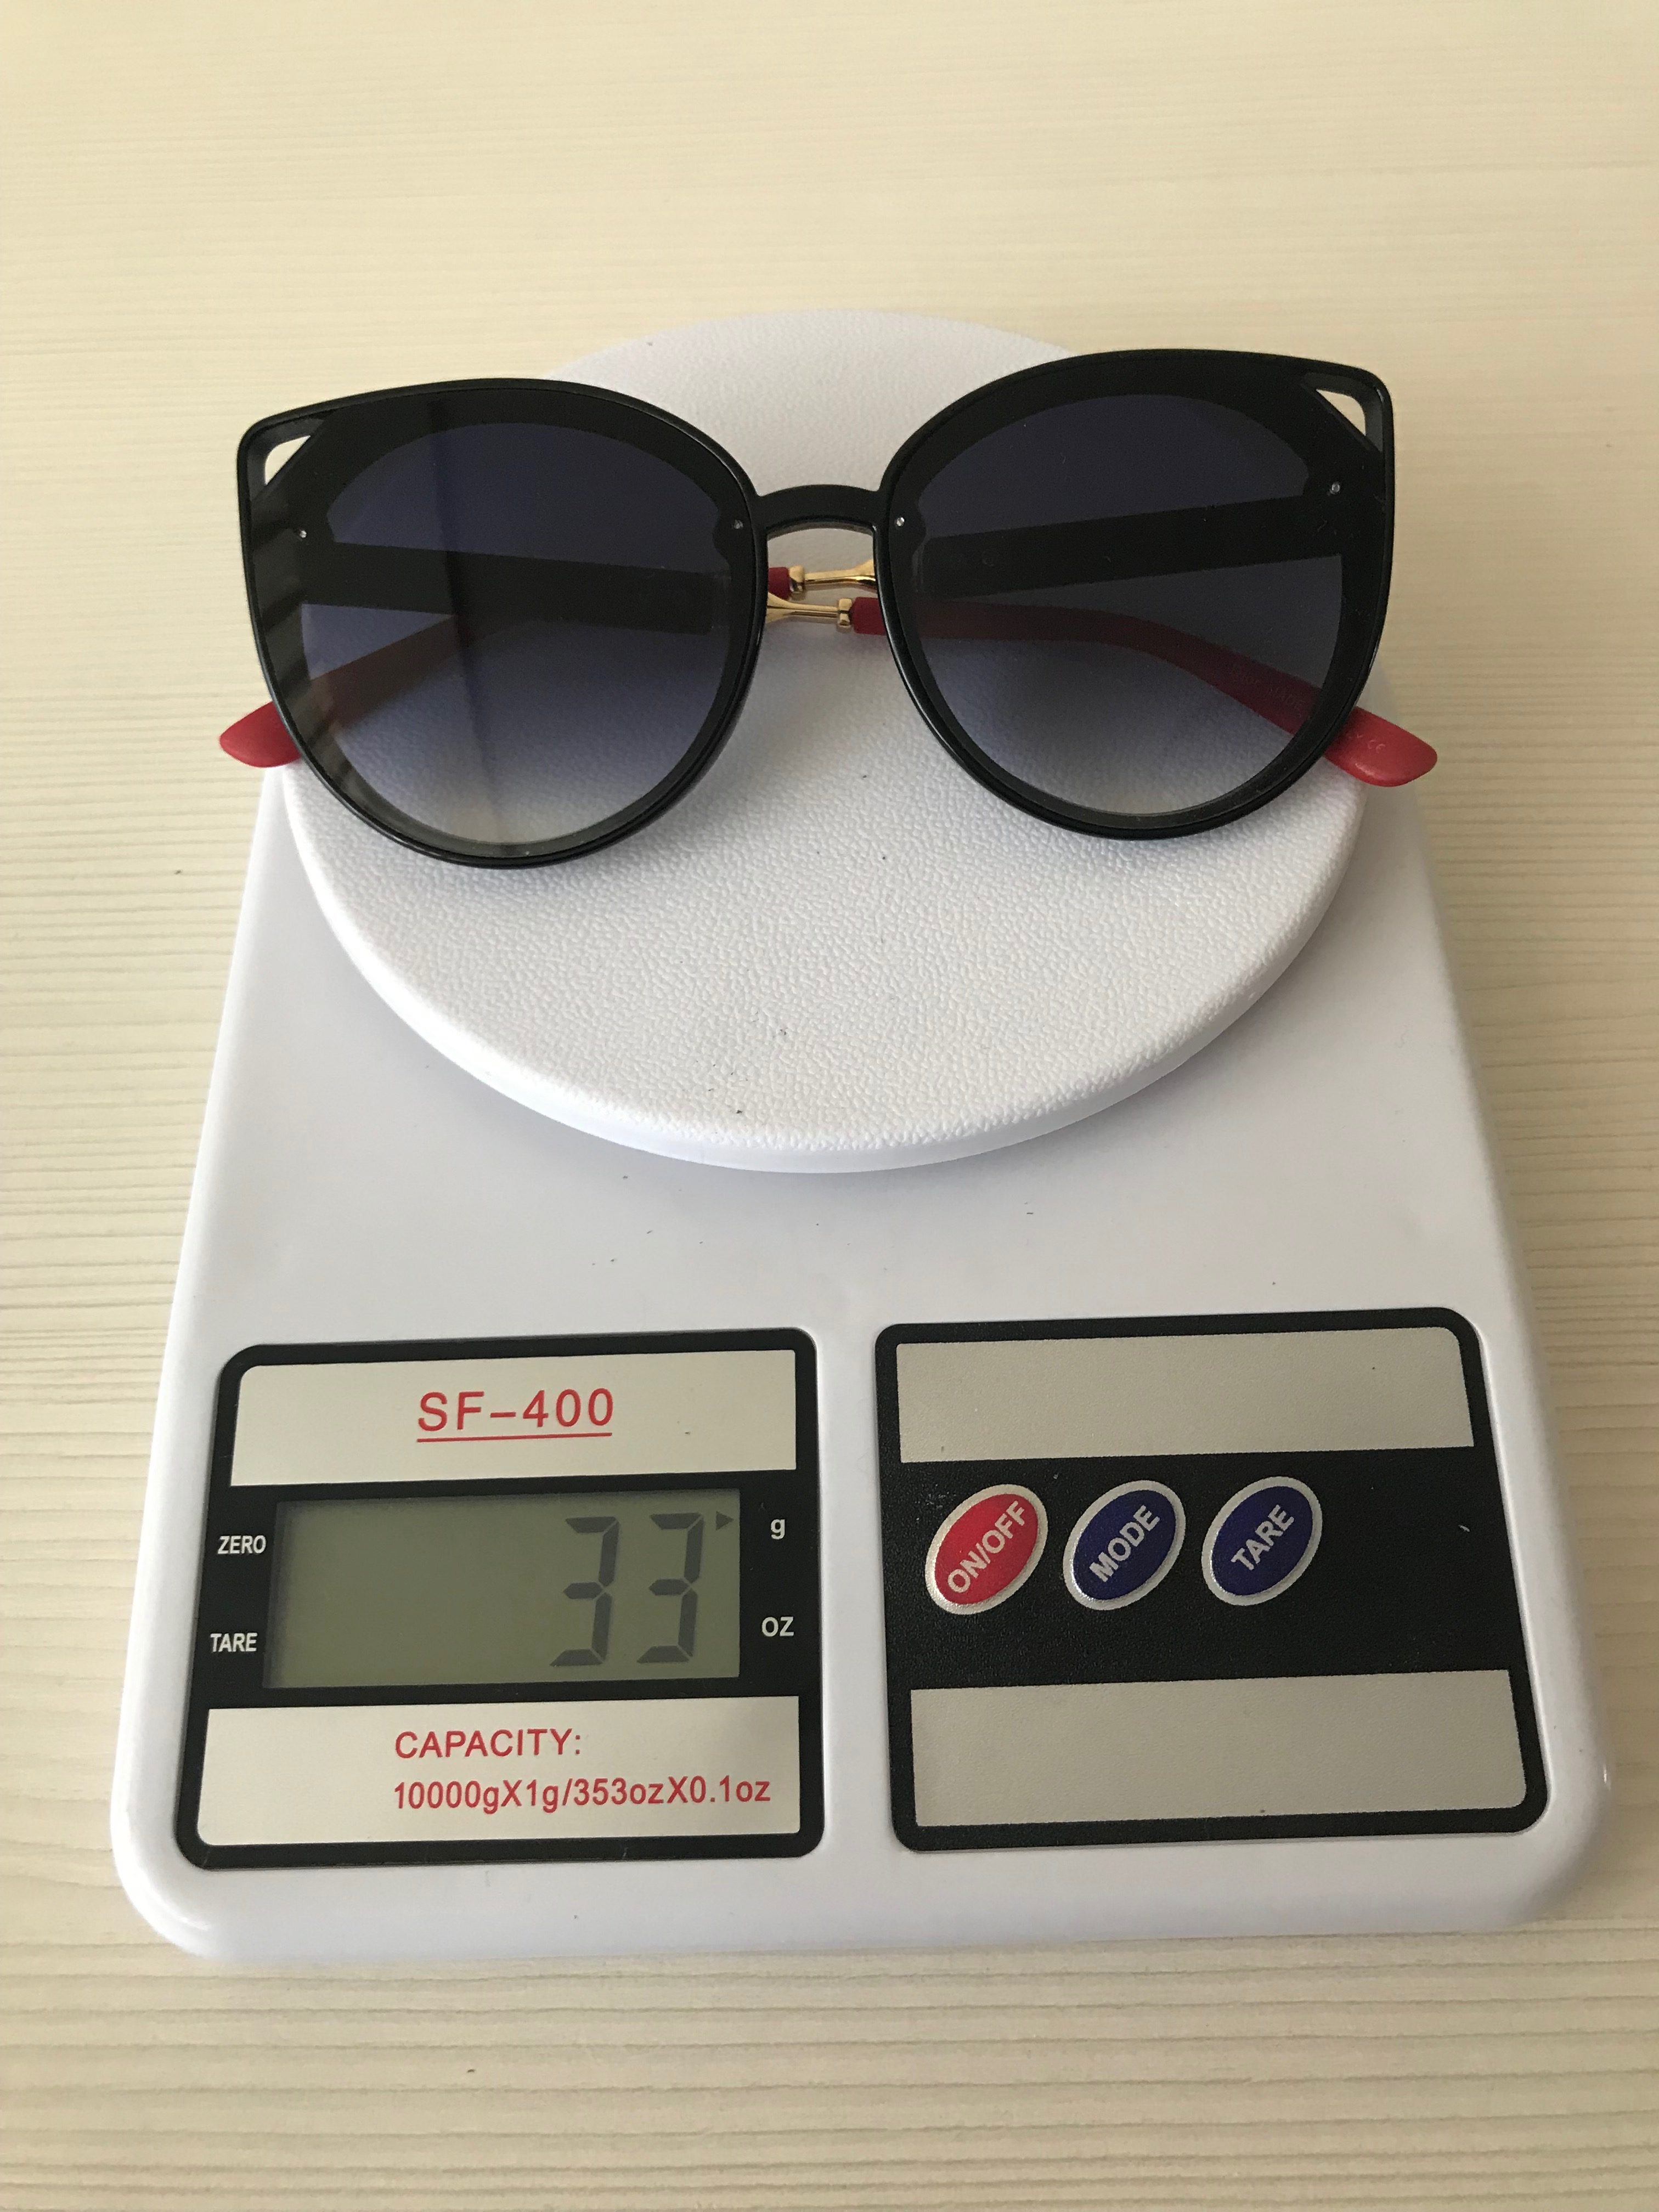 вес солнцезащитных очков